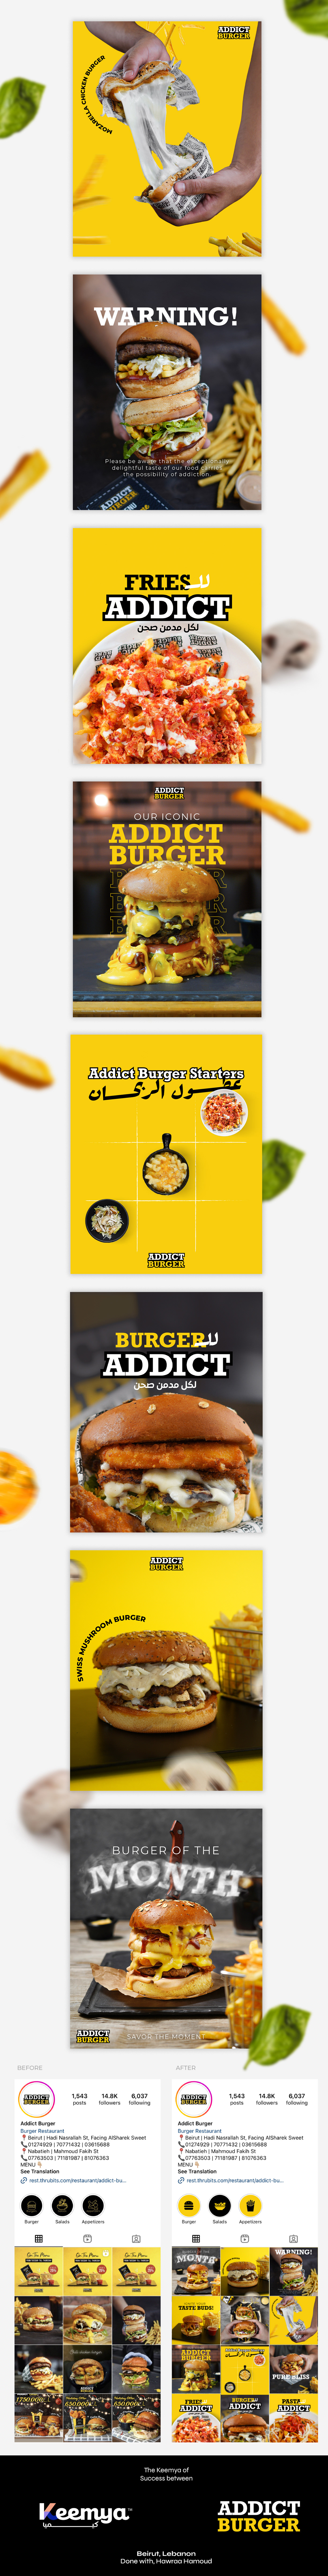 Fast food Social media post social media identity fast food restaurant marketing   digital marketing social media Social Media Design Food  burger